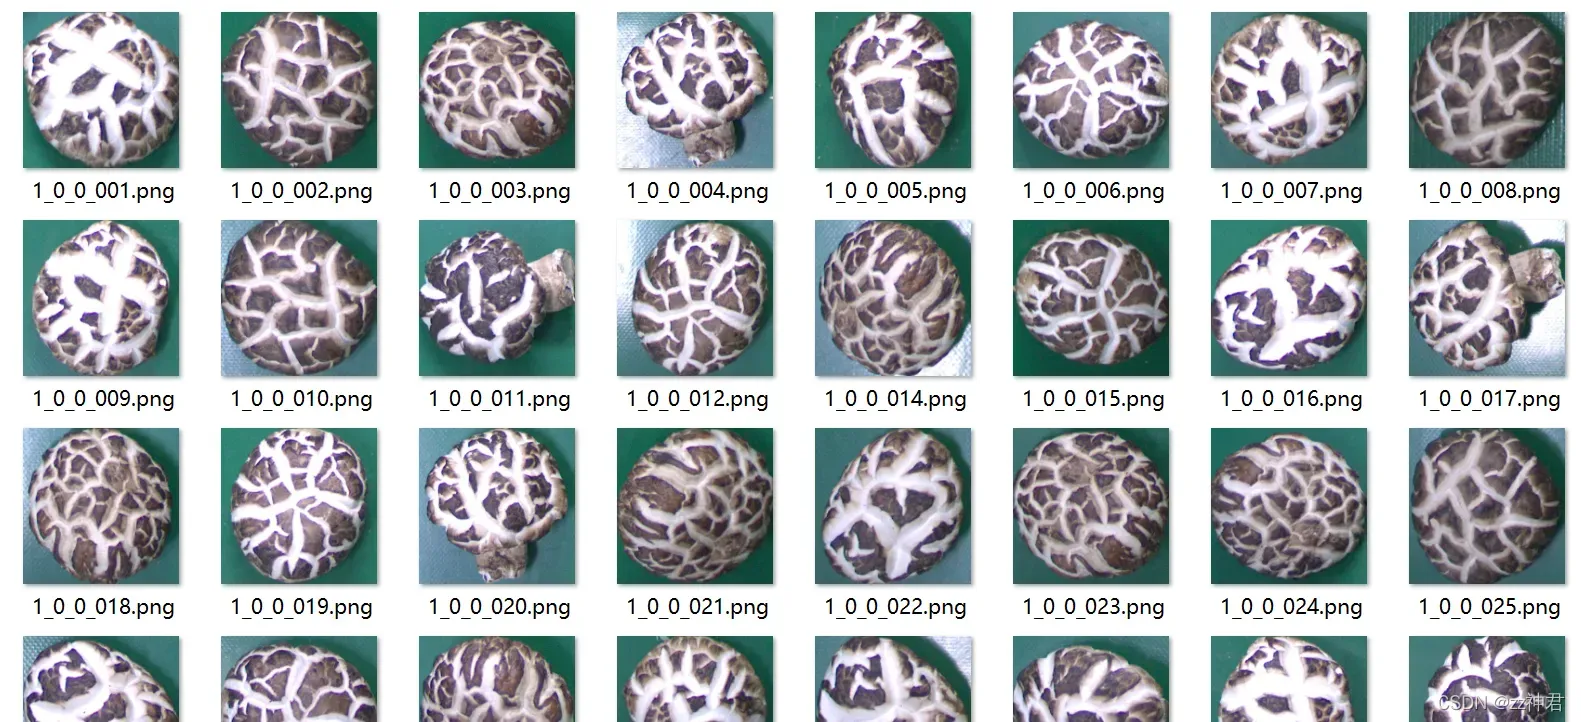 对两种类型的蘑菇图像进行识别与分类——使用SVM分类器（matlab）